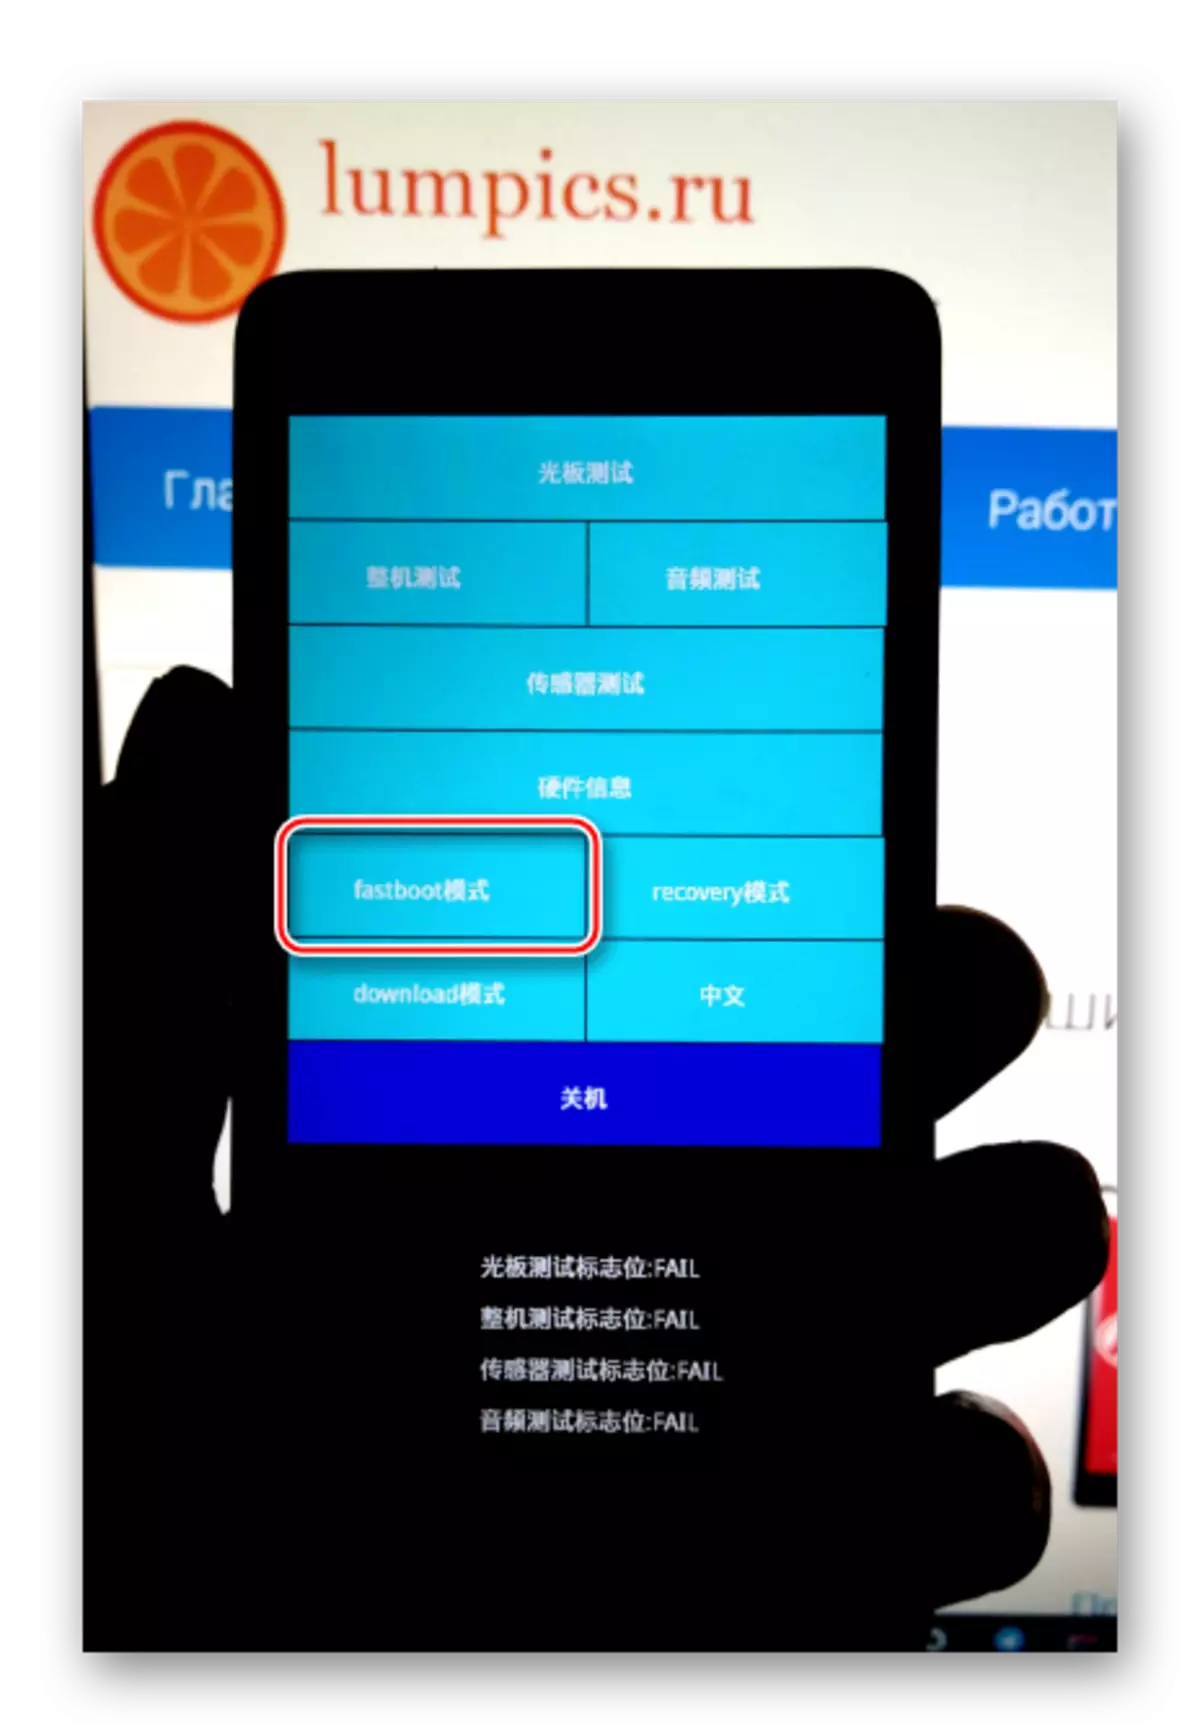 Xiaomi Redmi 2 yn rhedeg fastboot o Brelerer